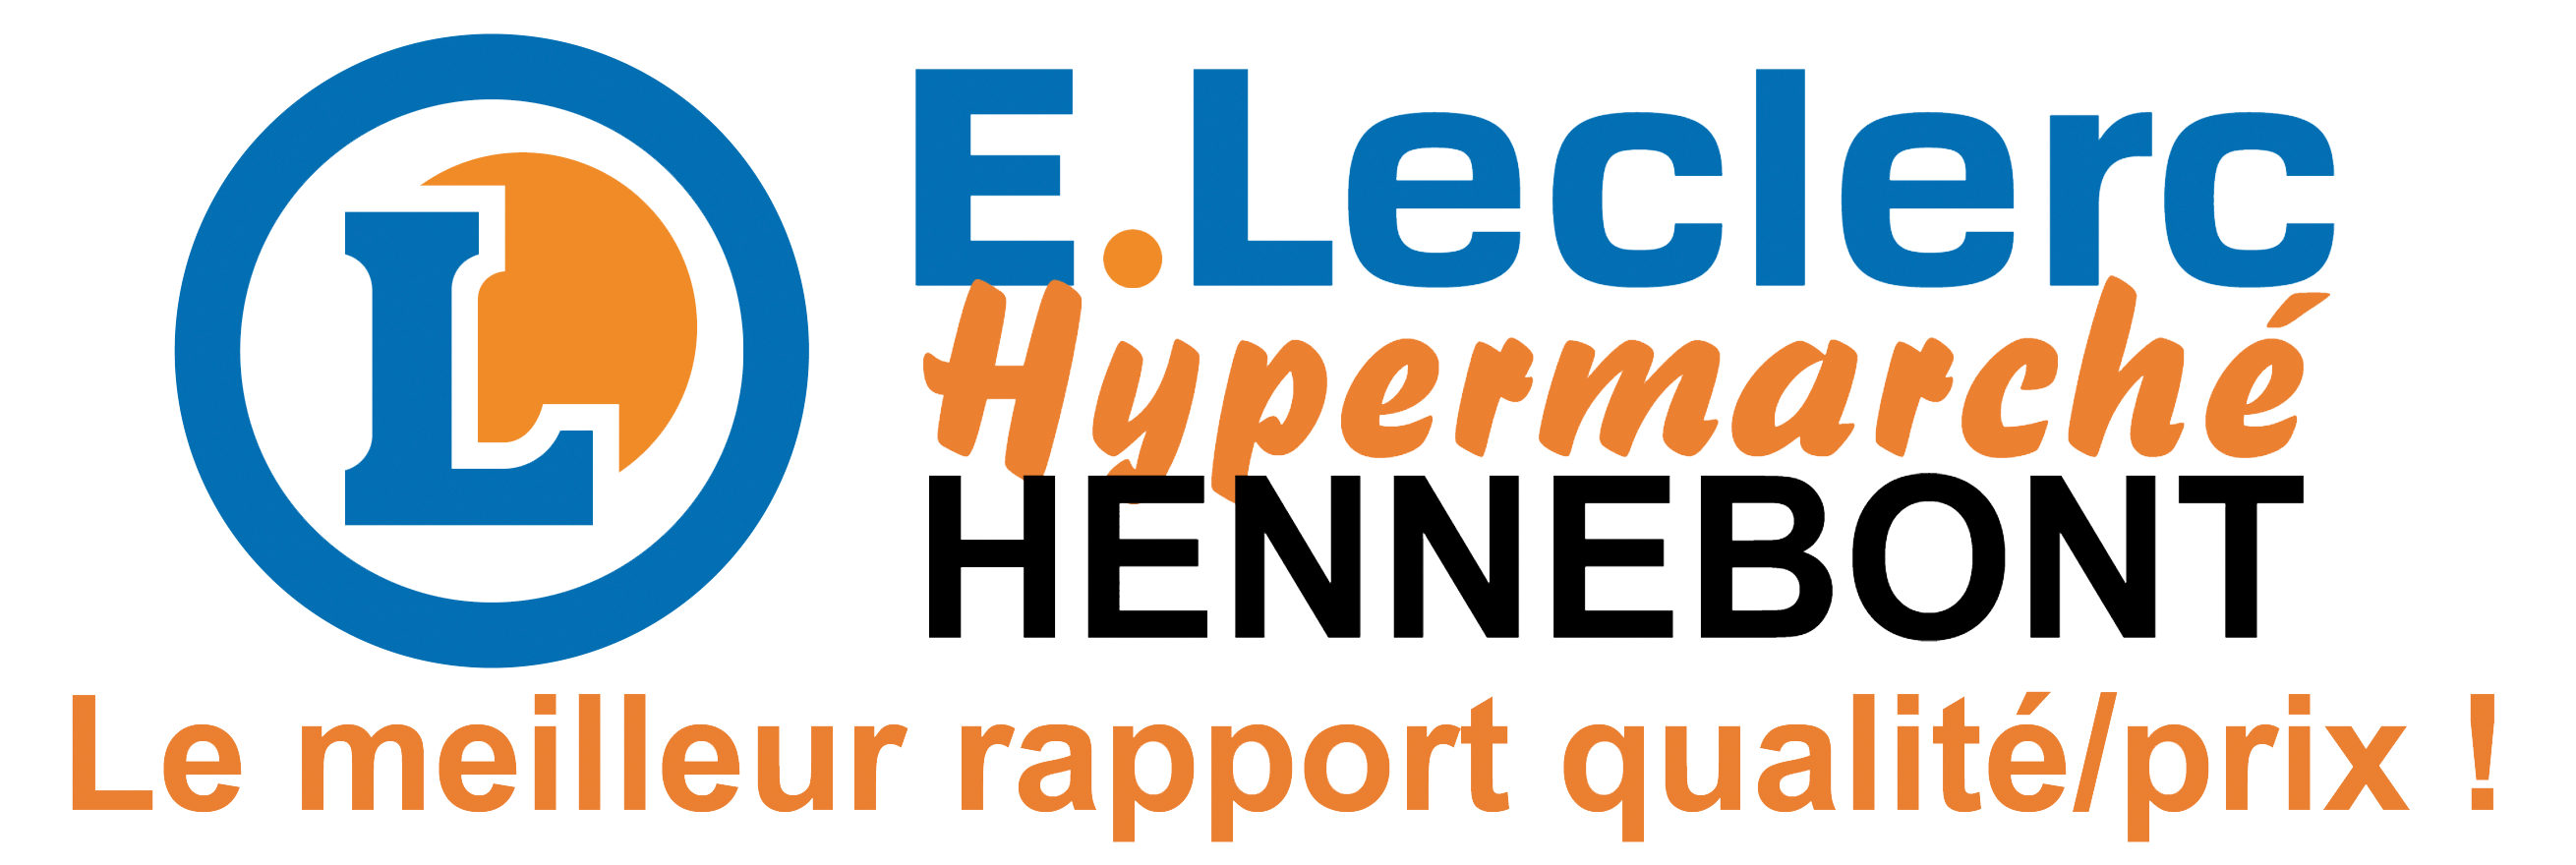 Logo société E.Leclerc Hennebont